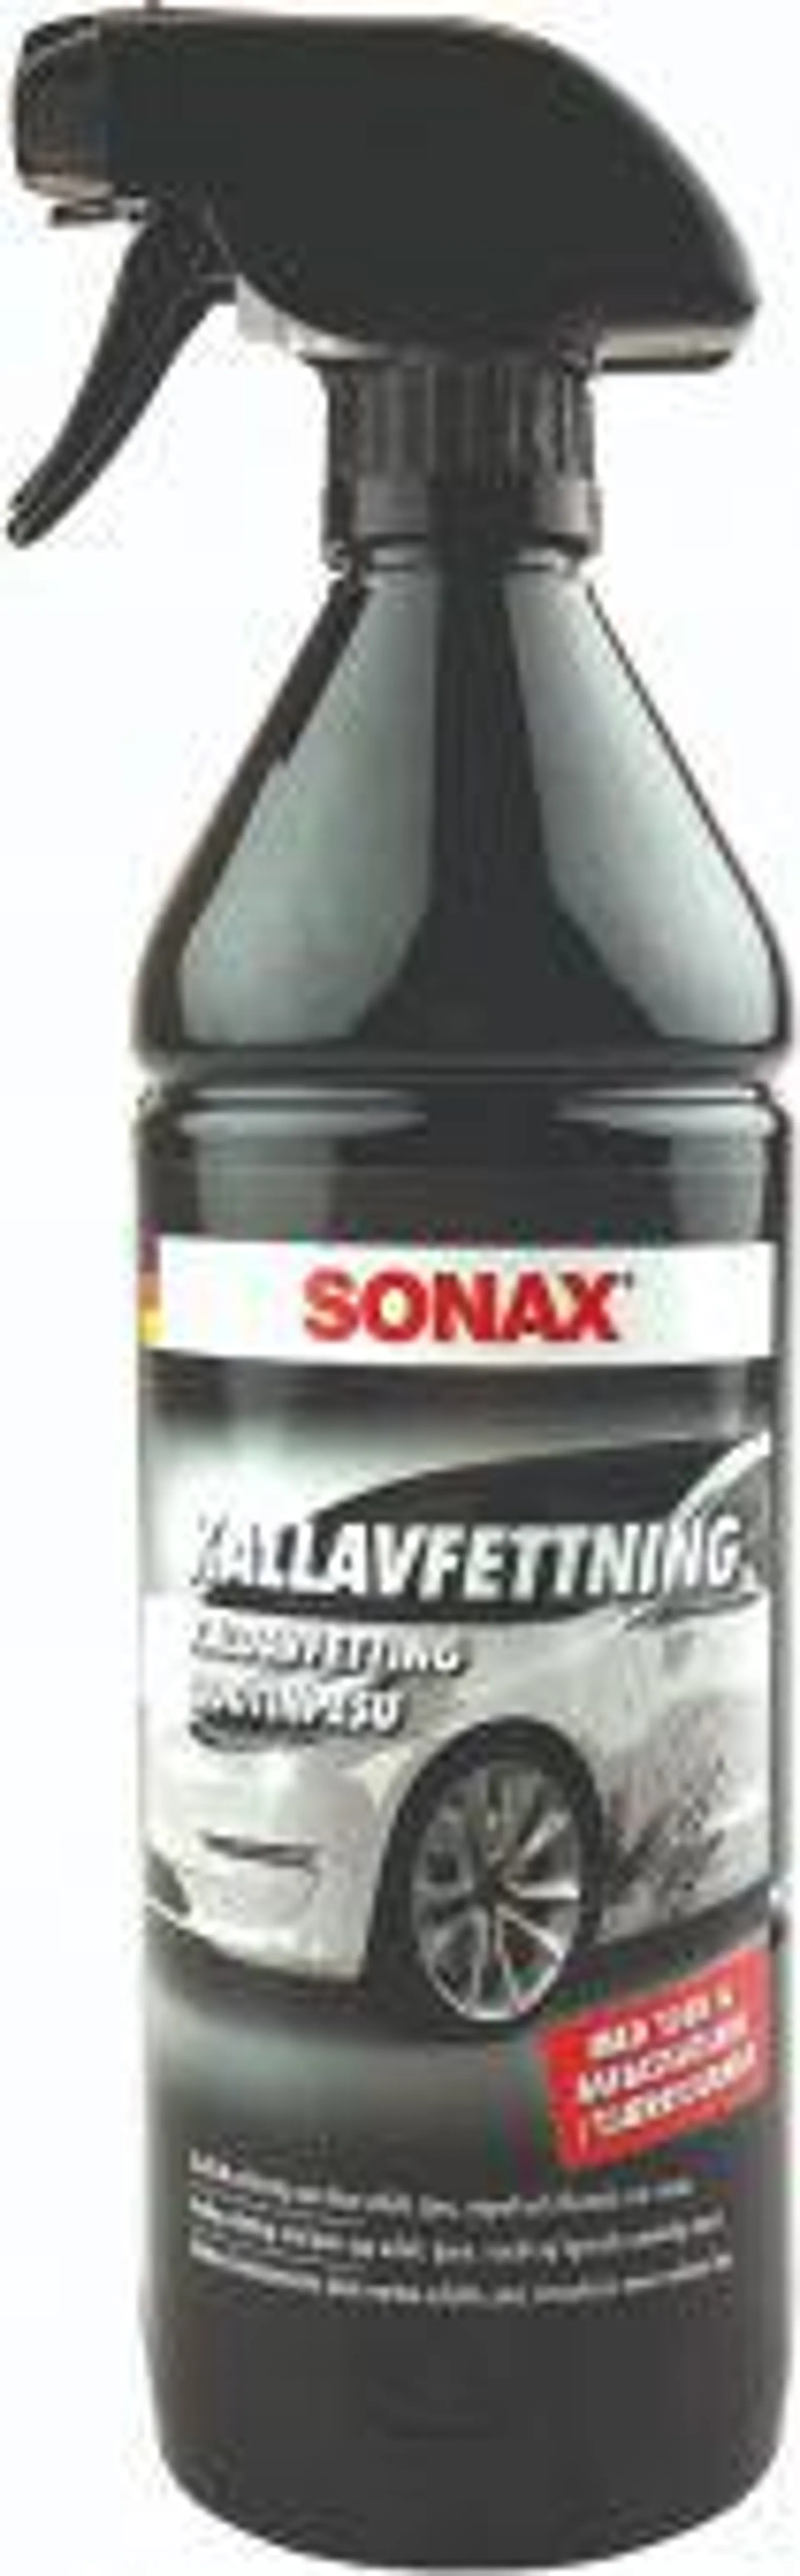 Sonax - Kallavfettning 1 l